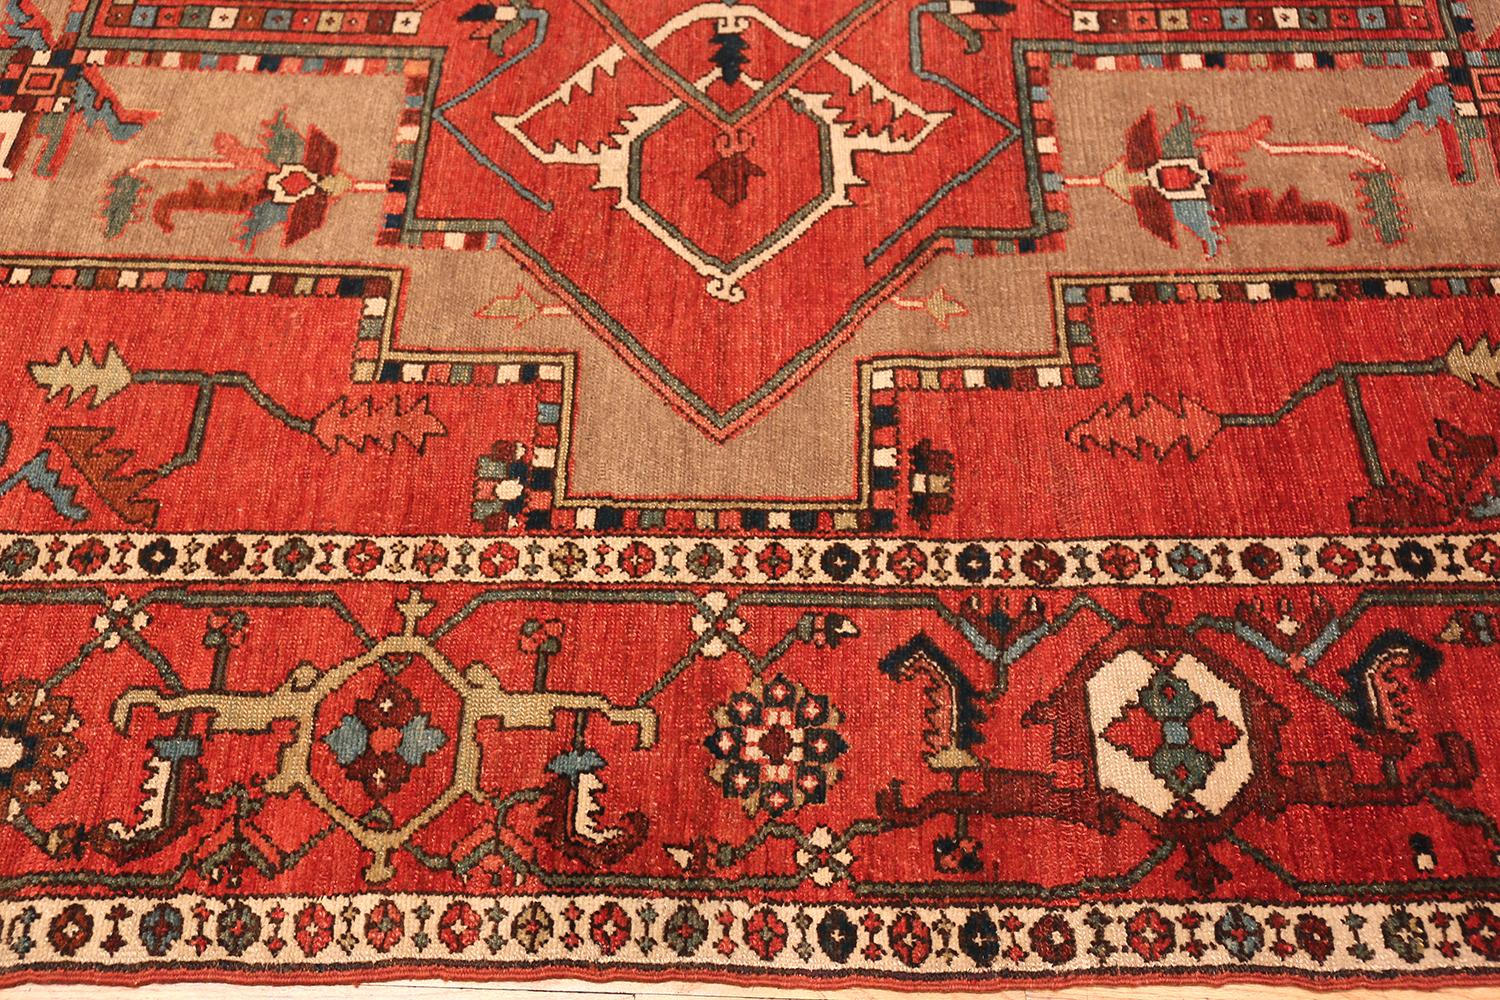 Atemberaubende große Größe geometrische Design antike persische Serapi Teppich, Herkunftsland / Teppich-Typ: Persische Teppiche, Datum um 1900. Größe: 11 ft 6 in x 15 ft (3,51 m x 4,57 m).